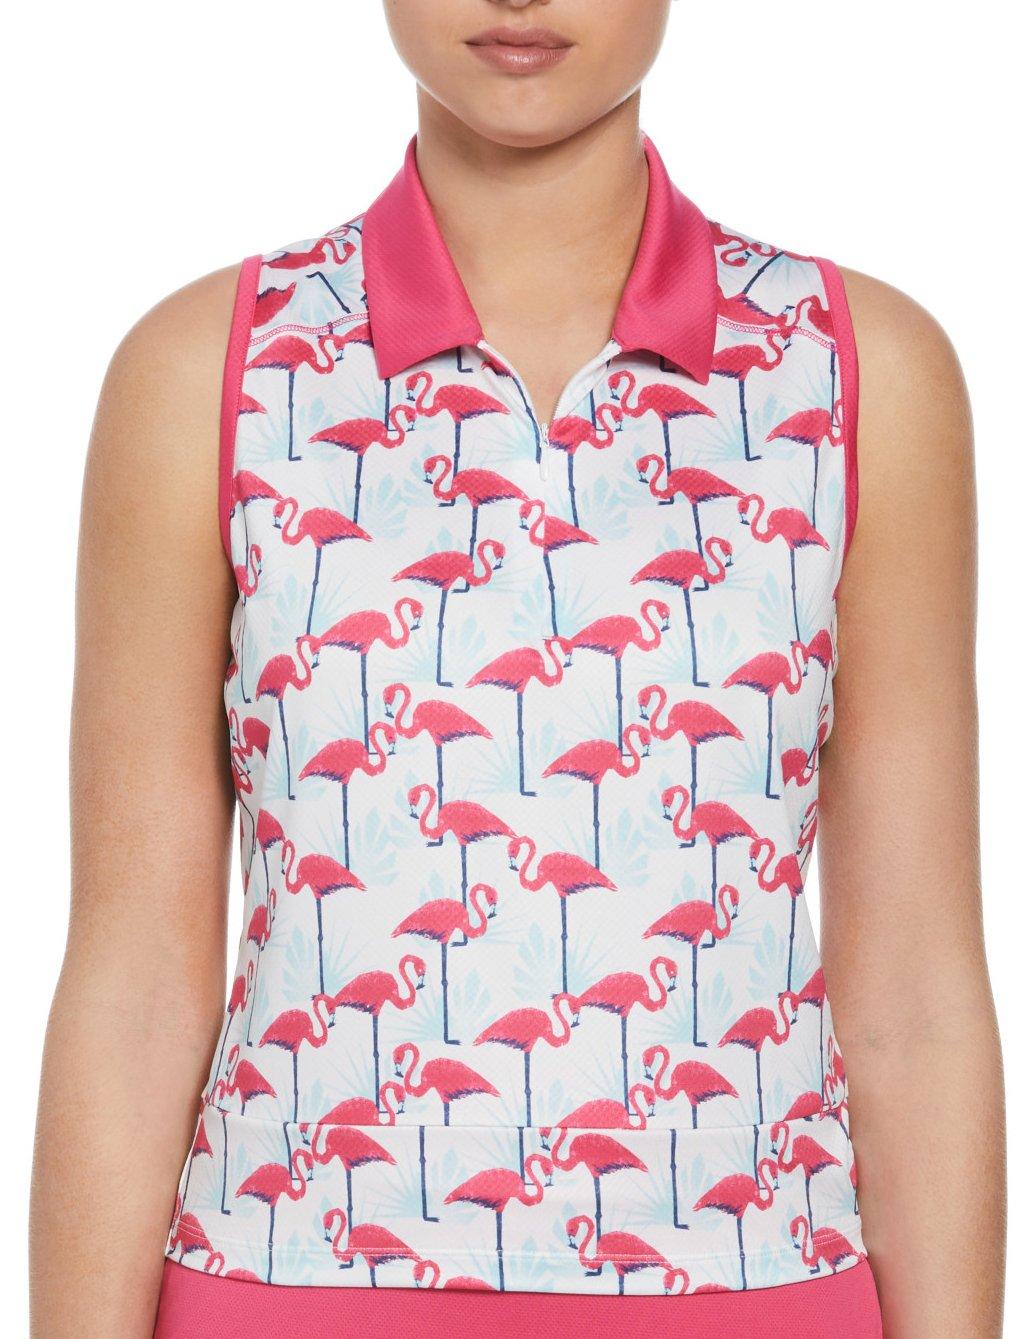 PGA Tour Womens Cropped Sleeveless Flamingo Print Top